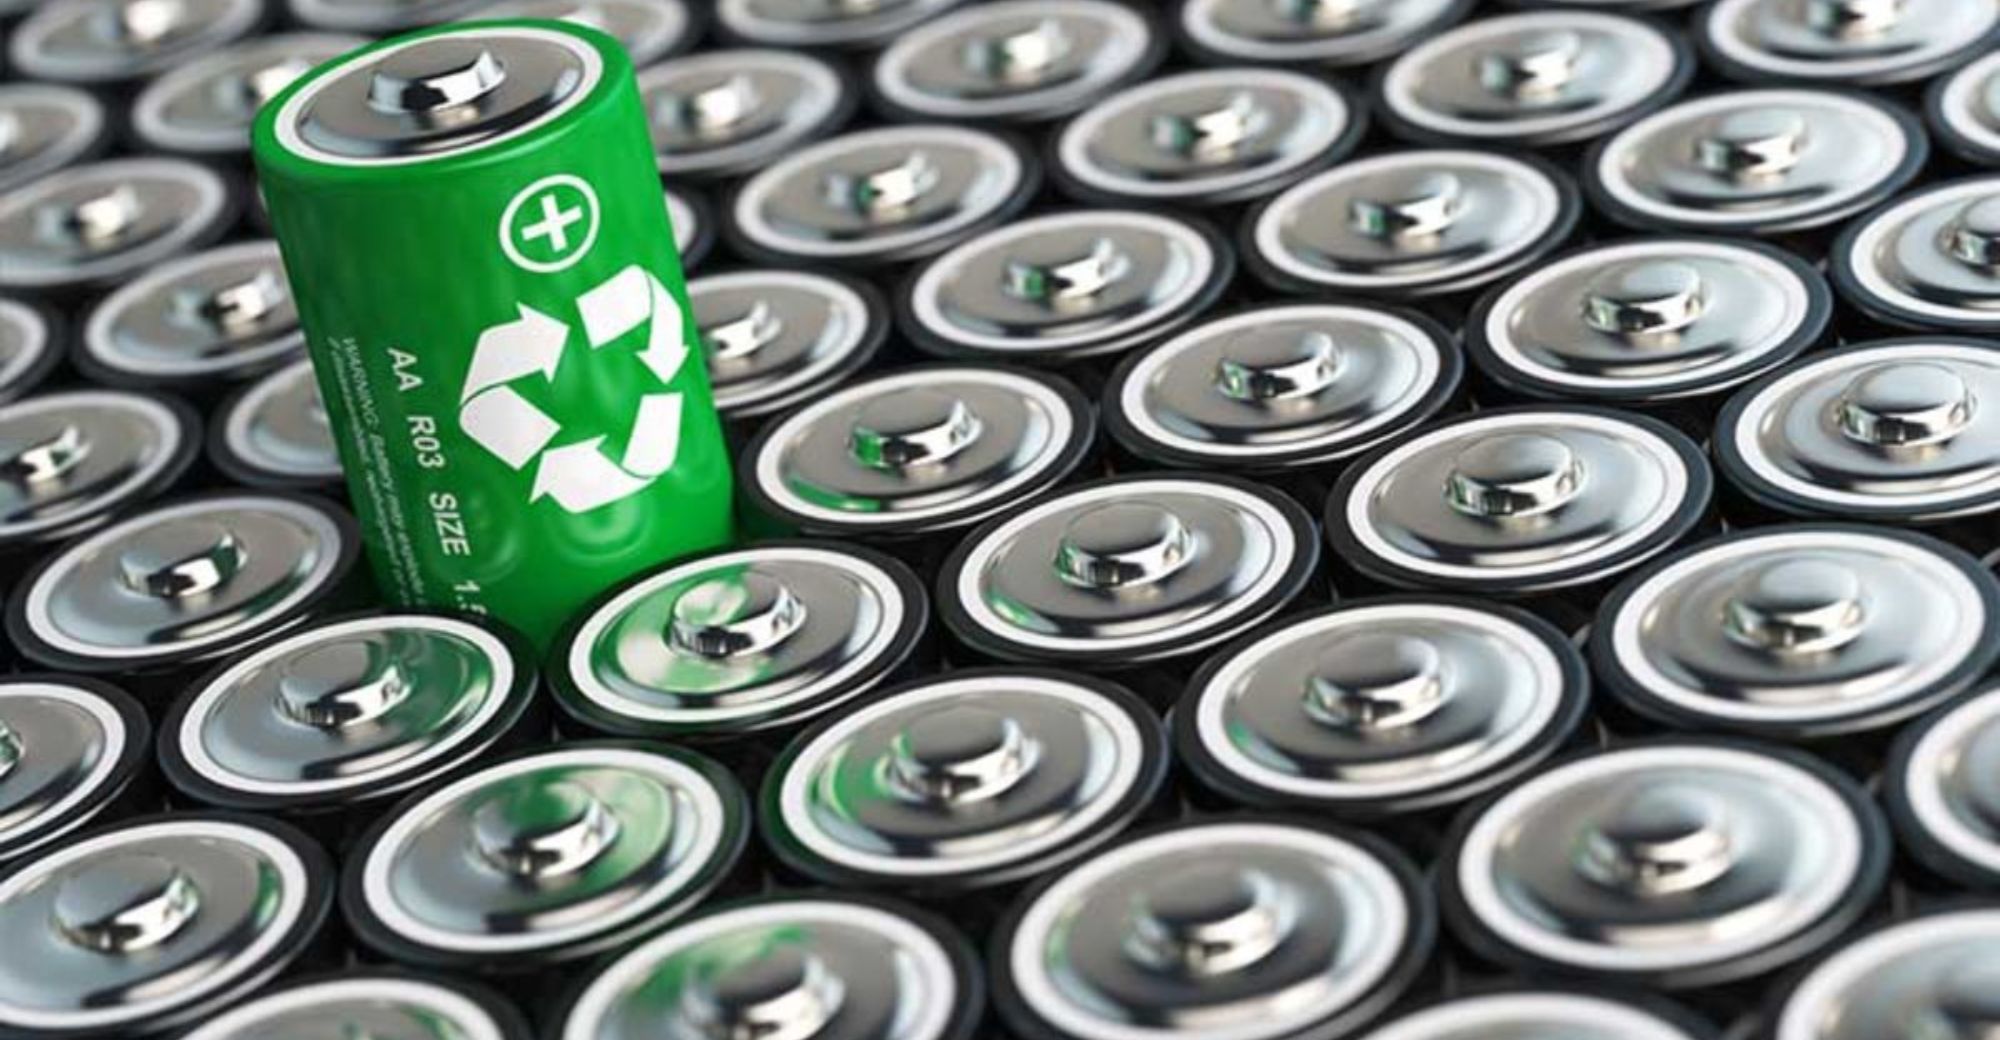 Empresa de reciclagem de baterias Ruicycle conclui B Rodada de Financiamento